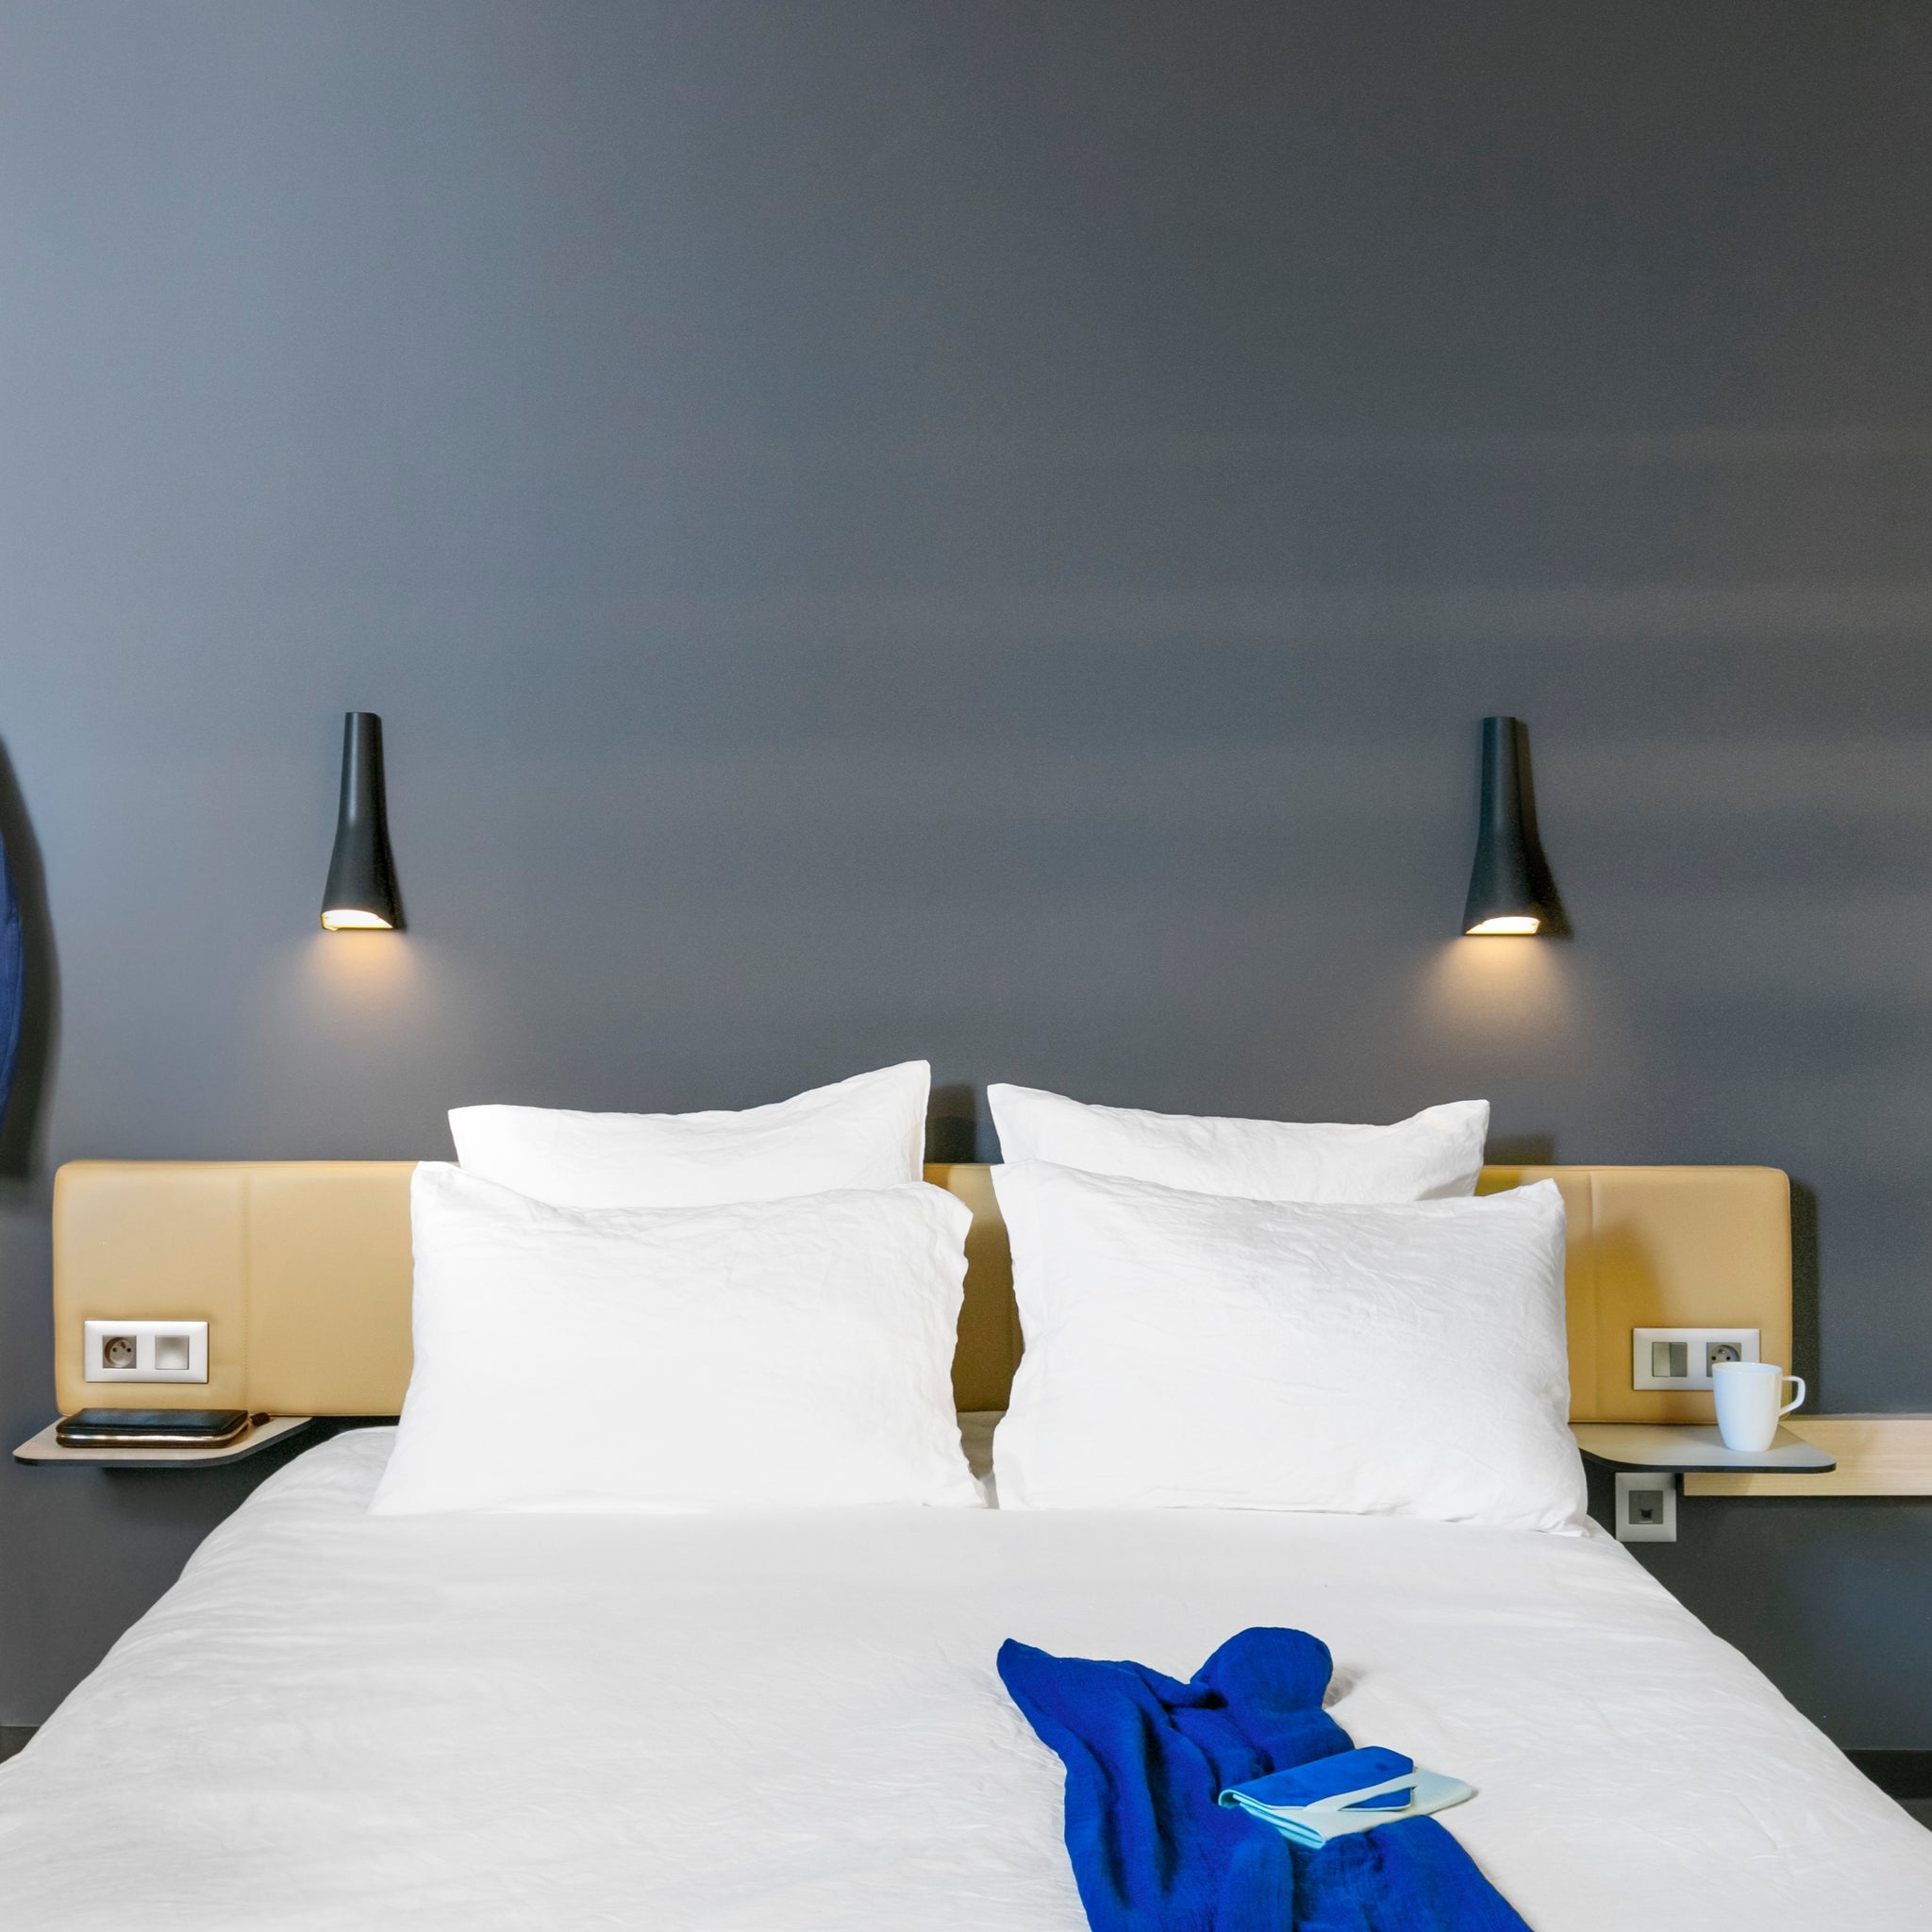 Les oreillers Dilos – La boutique OKKO HOTELS